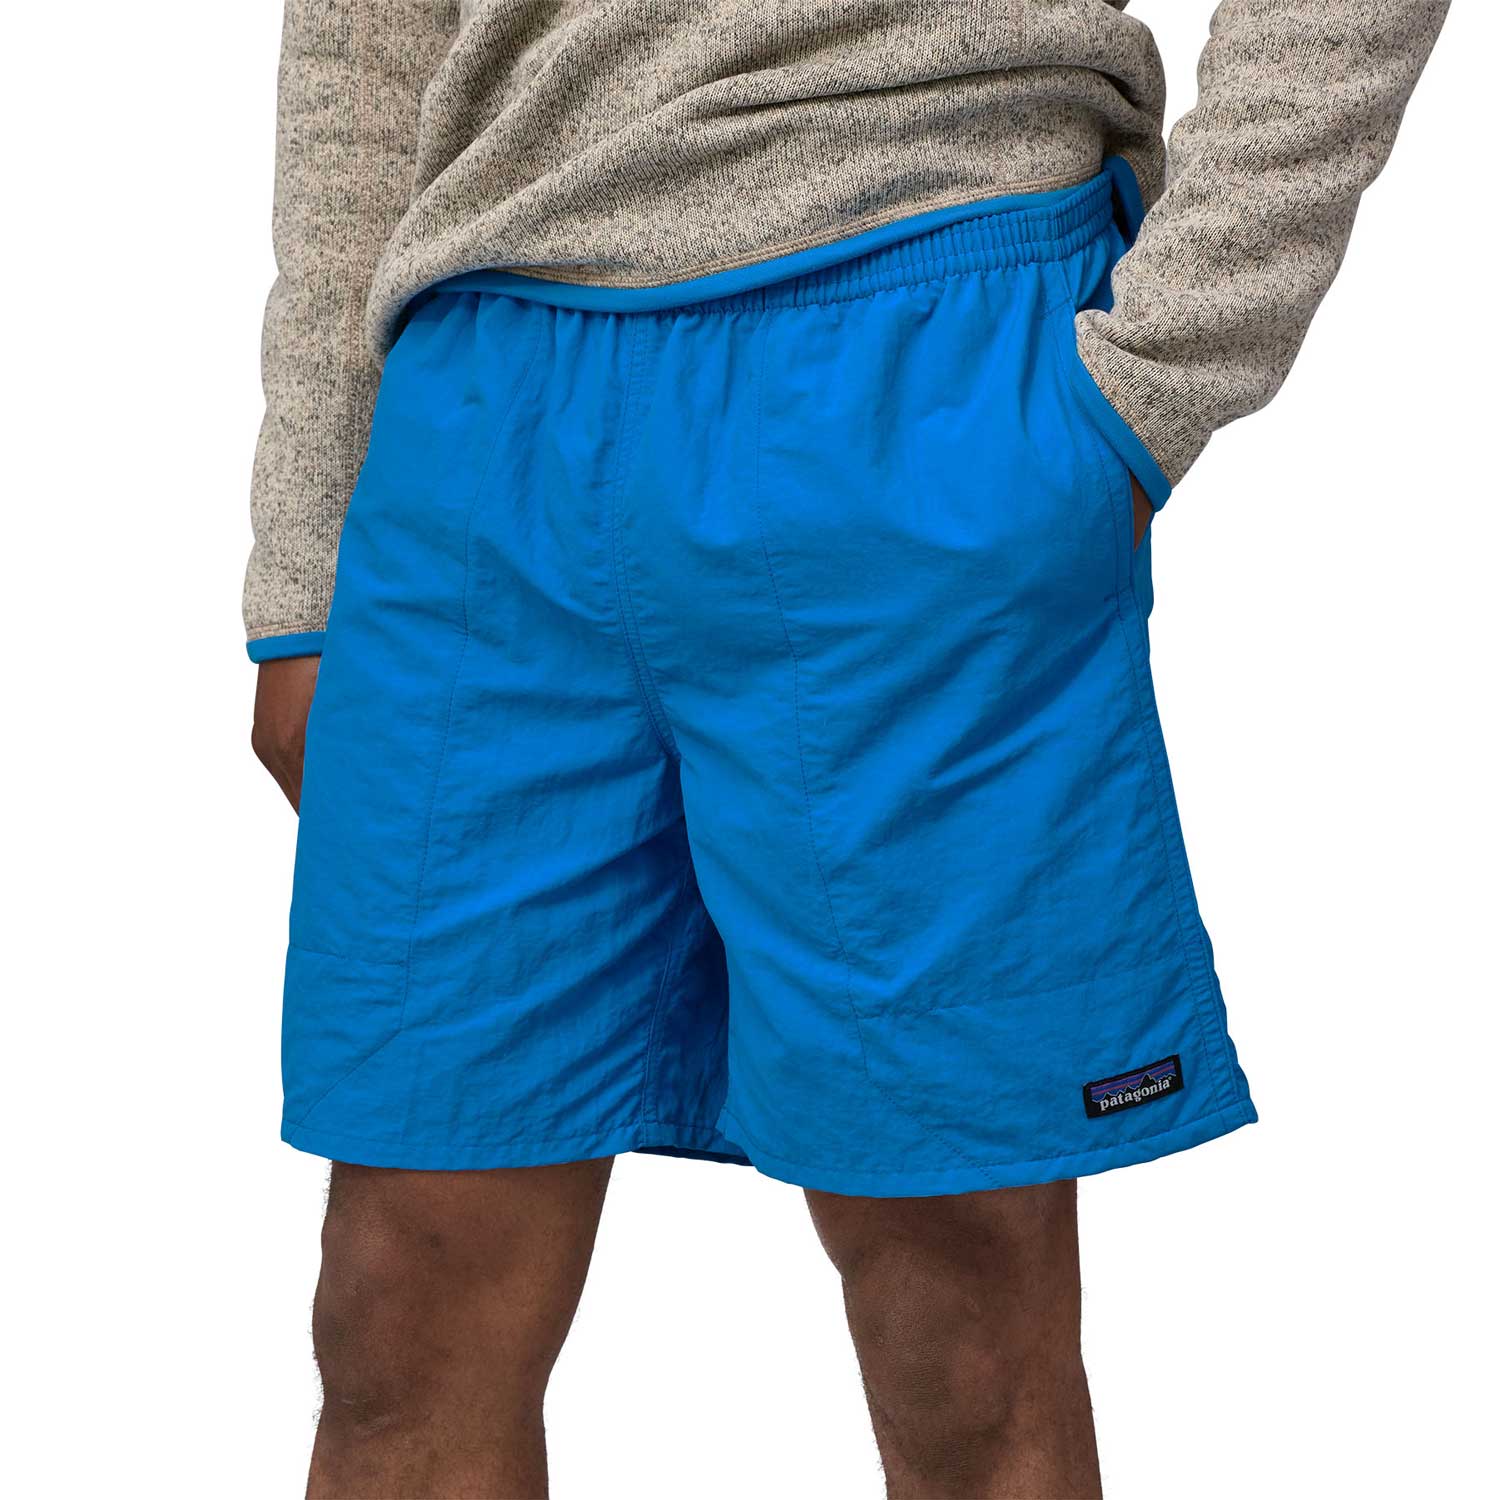 Patagonia: Men's Baggies Longs 7" Shorts